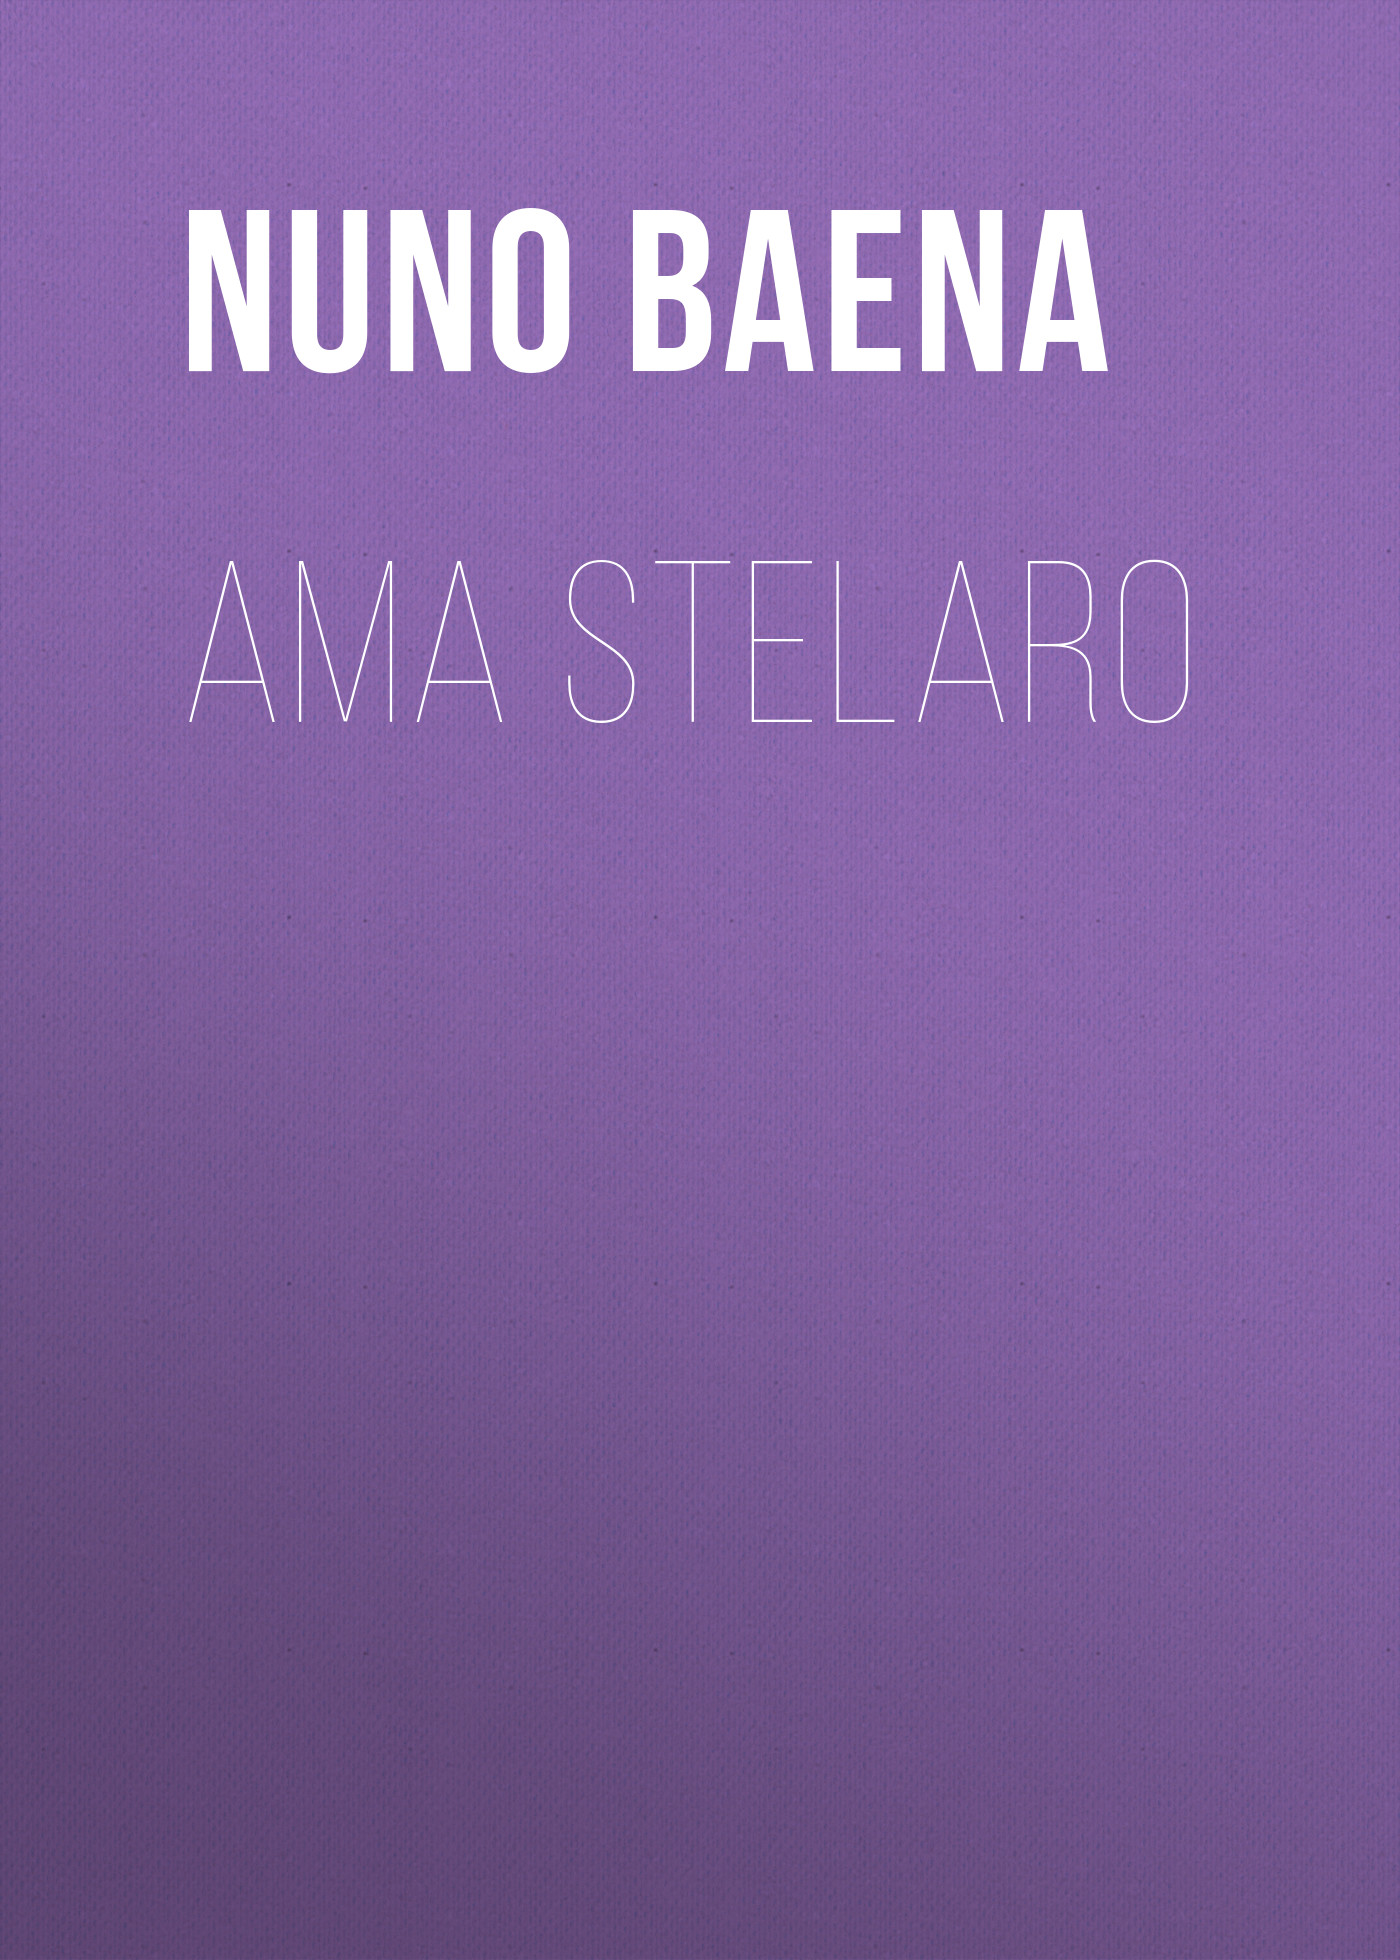 Книга Ama Stelaro из серии , созданная Nuno Baena, может относится к жанру Зарубежная старинная литература, Зарубежная классика. Стоимость электронной книги Ama Stelaro с идентификатором 24176788 составляет 0 руб.